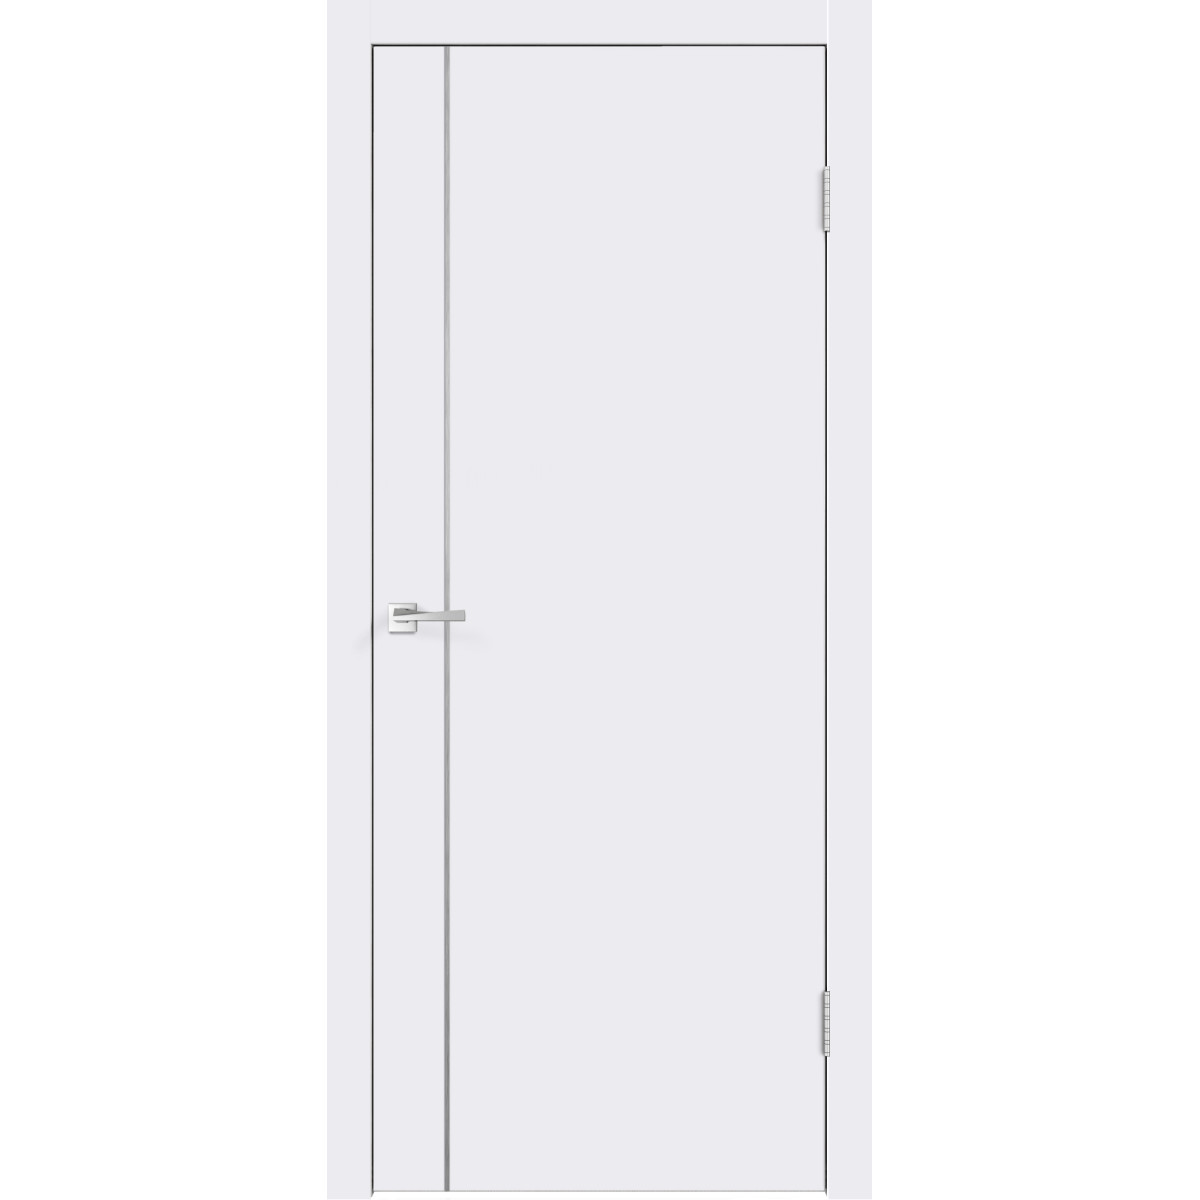 Дверь межкомнатная Смарт М1 60х200 крашеная с фурнитурой, цвет белый